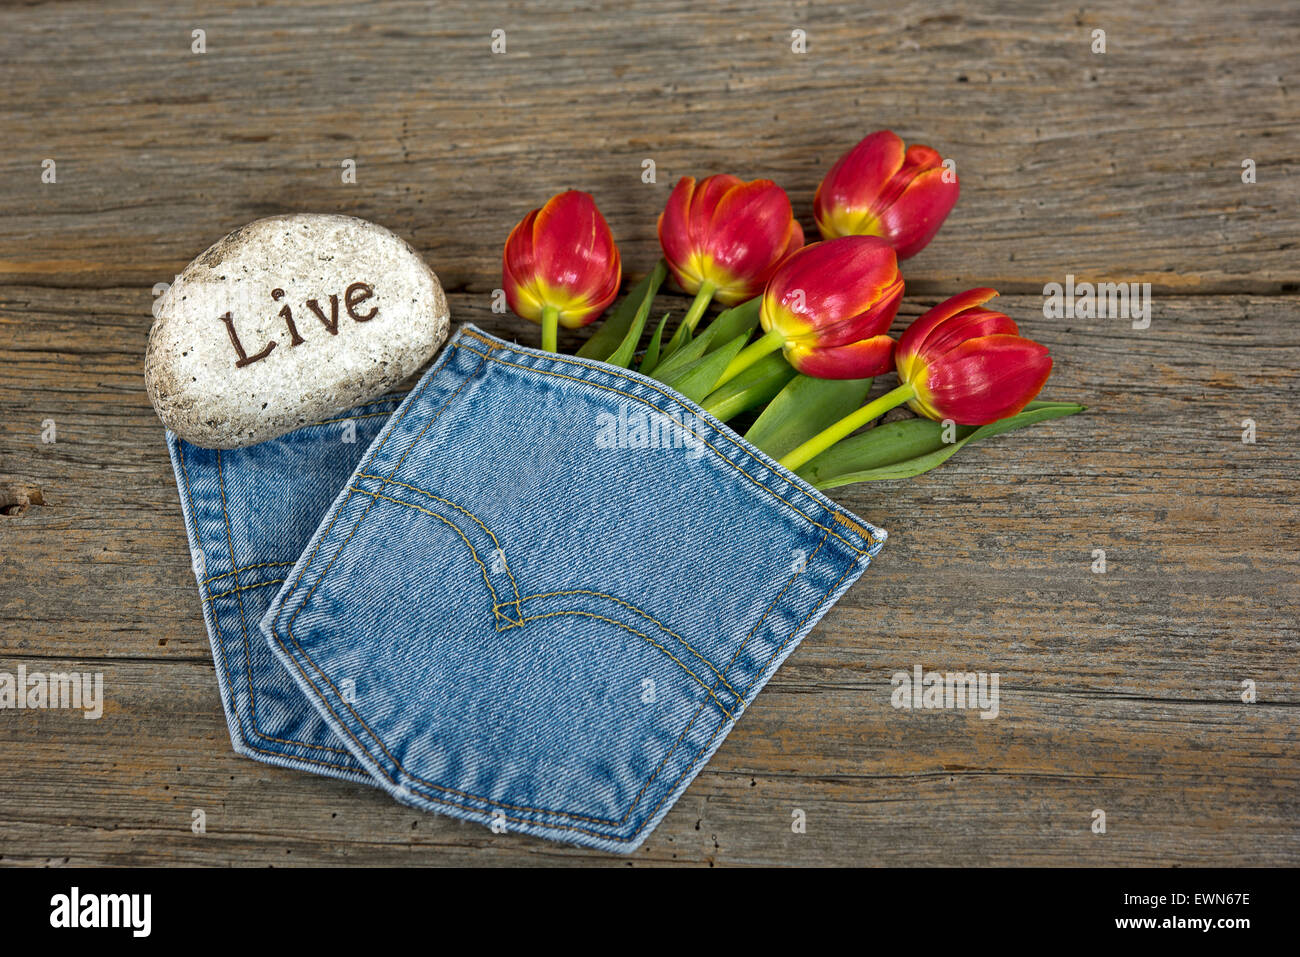 Rote Tulpe Blumenstrauß in blue-Jeans-Tasche mit Rock auf rustikalen Holz. Stockfoto